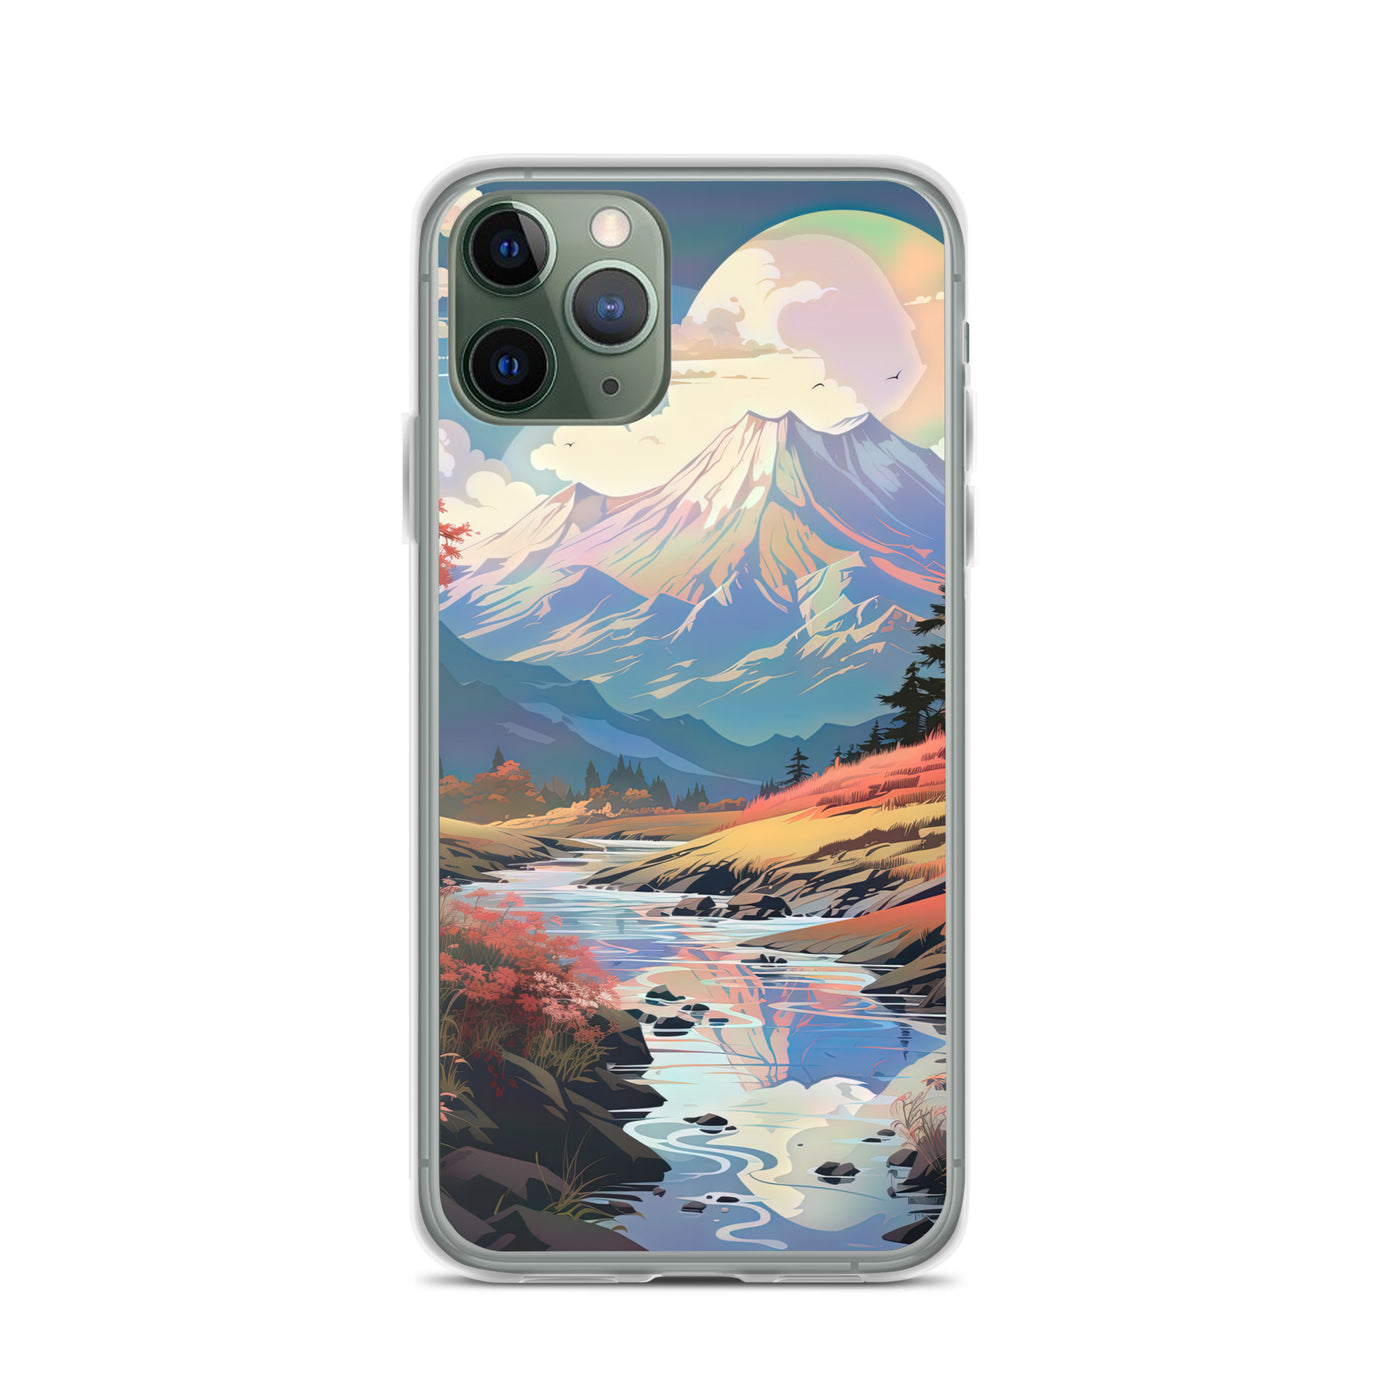 Berge. Fluss und Blumen - Malerei - iPhone Schutzhülle (durchsichtig) berge xxx iPhone 11 Pro